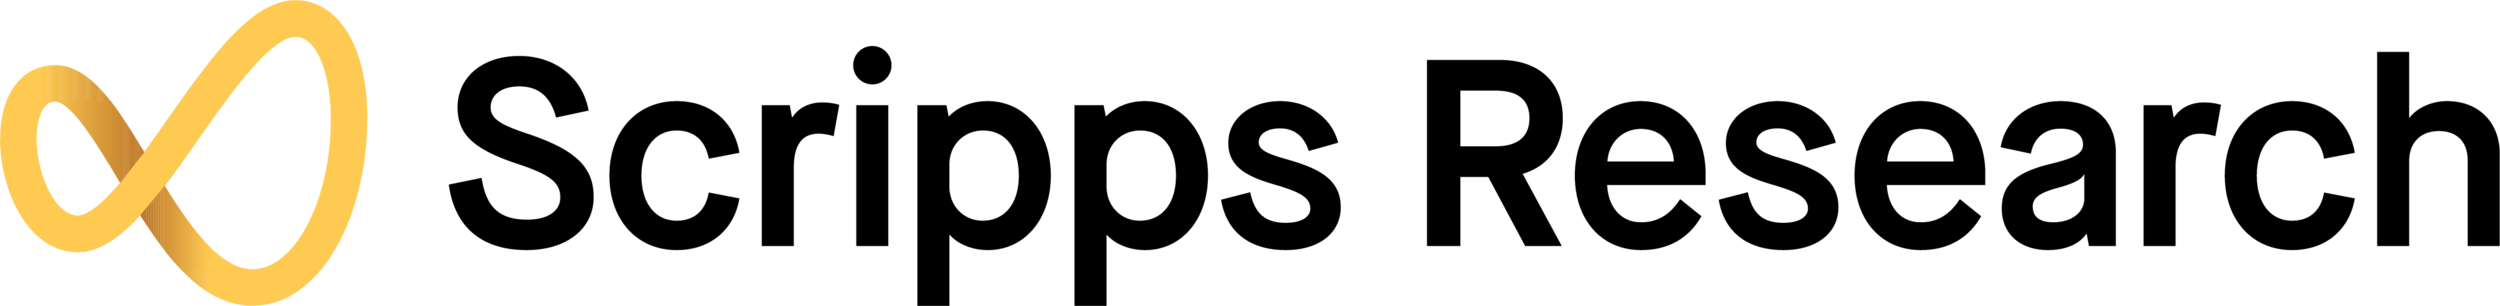 scripps-logo_black (1) (1).png